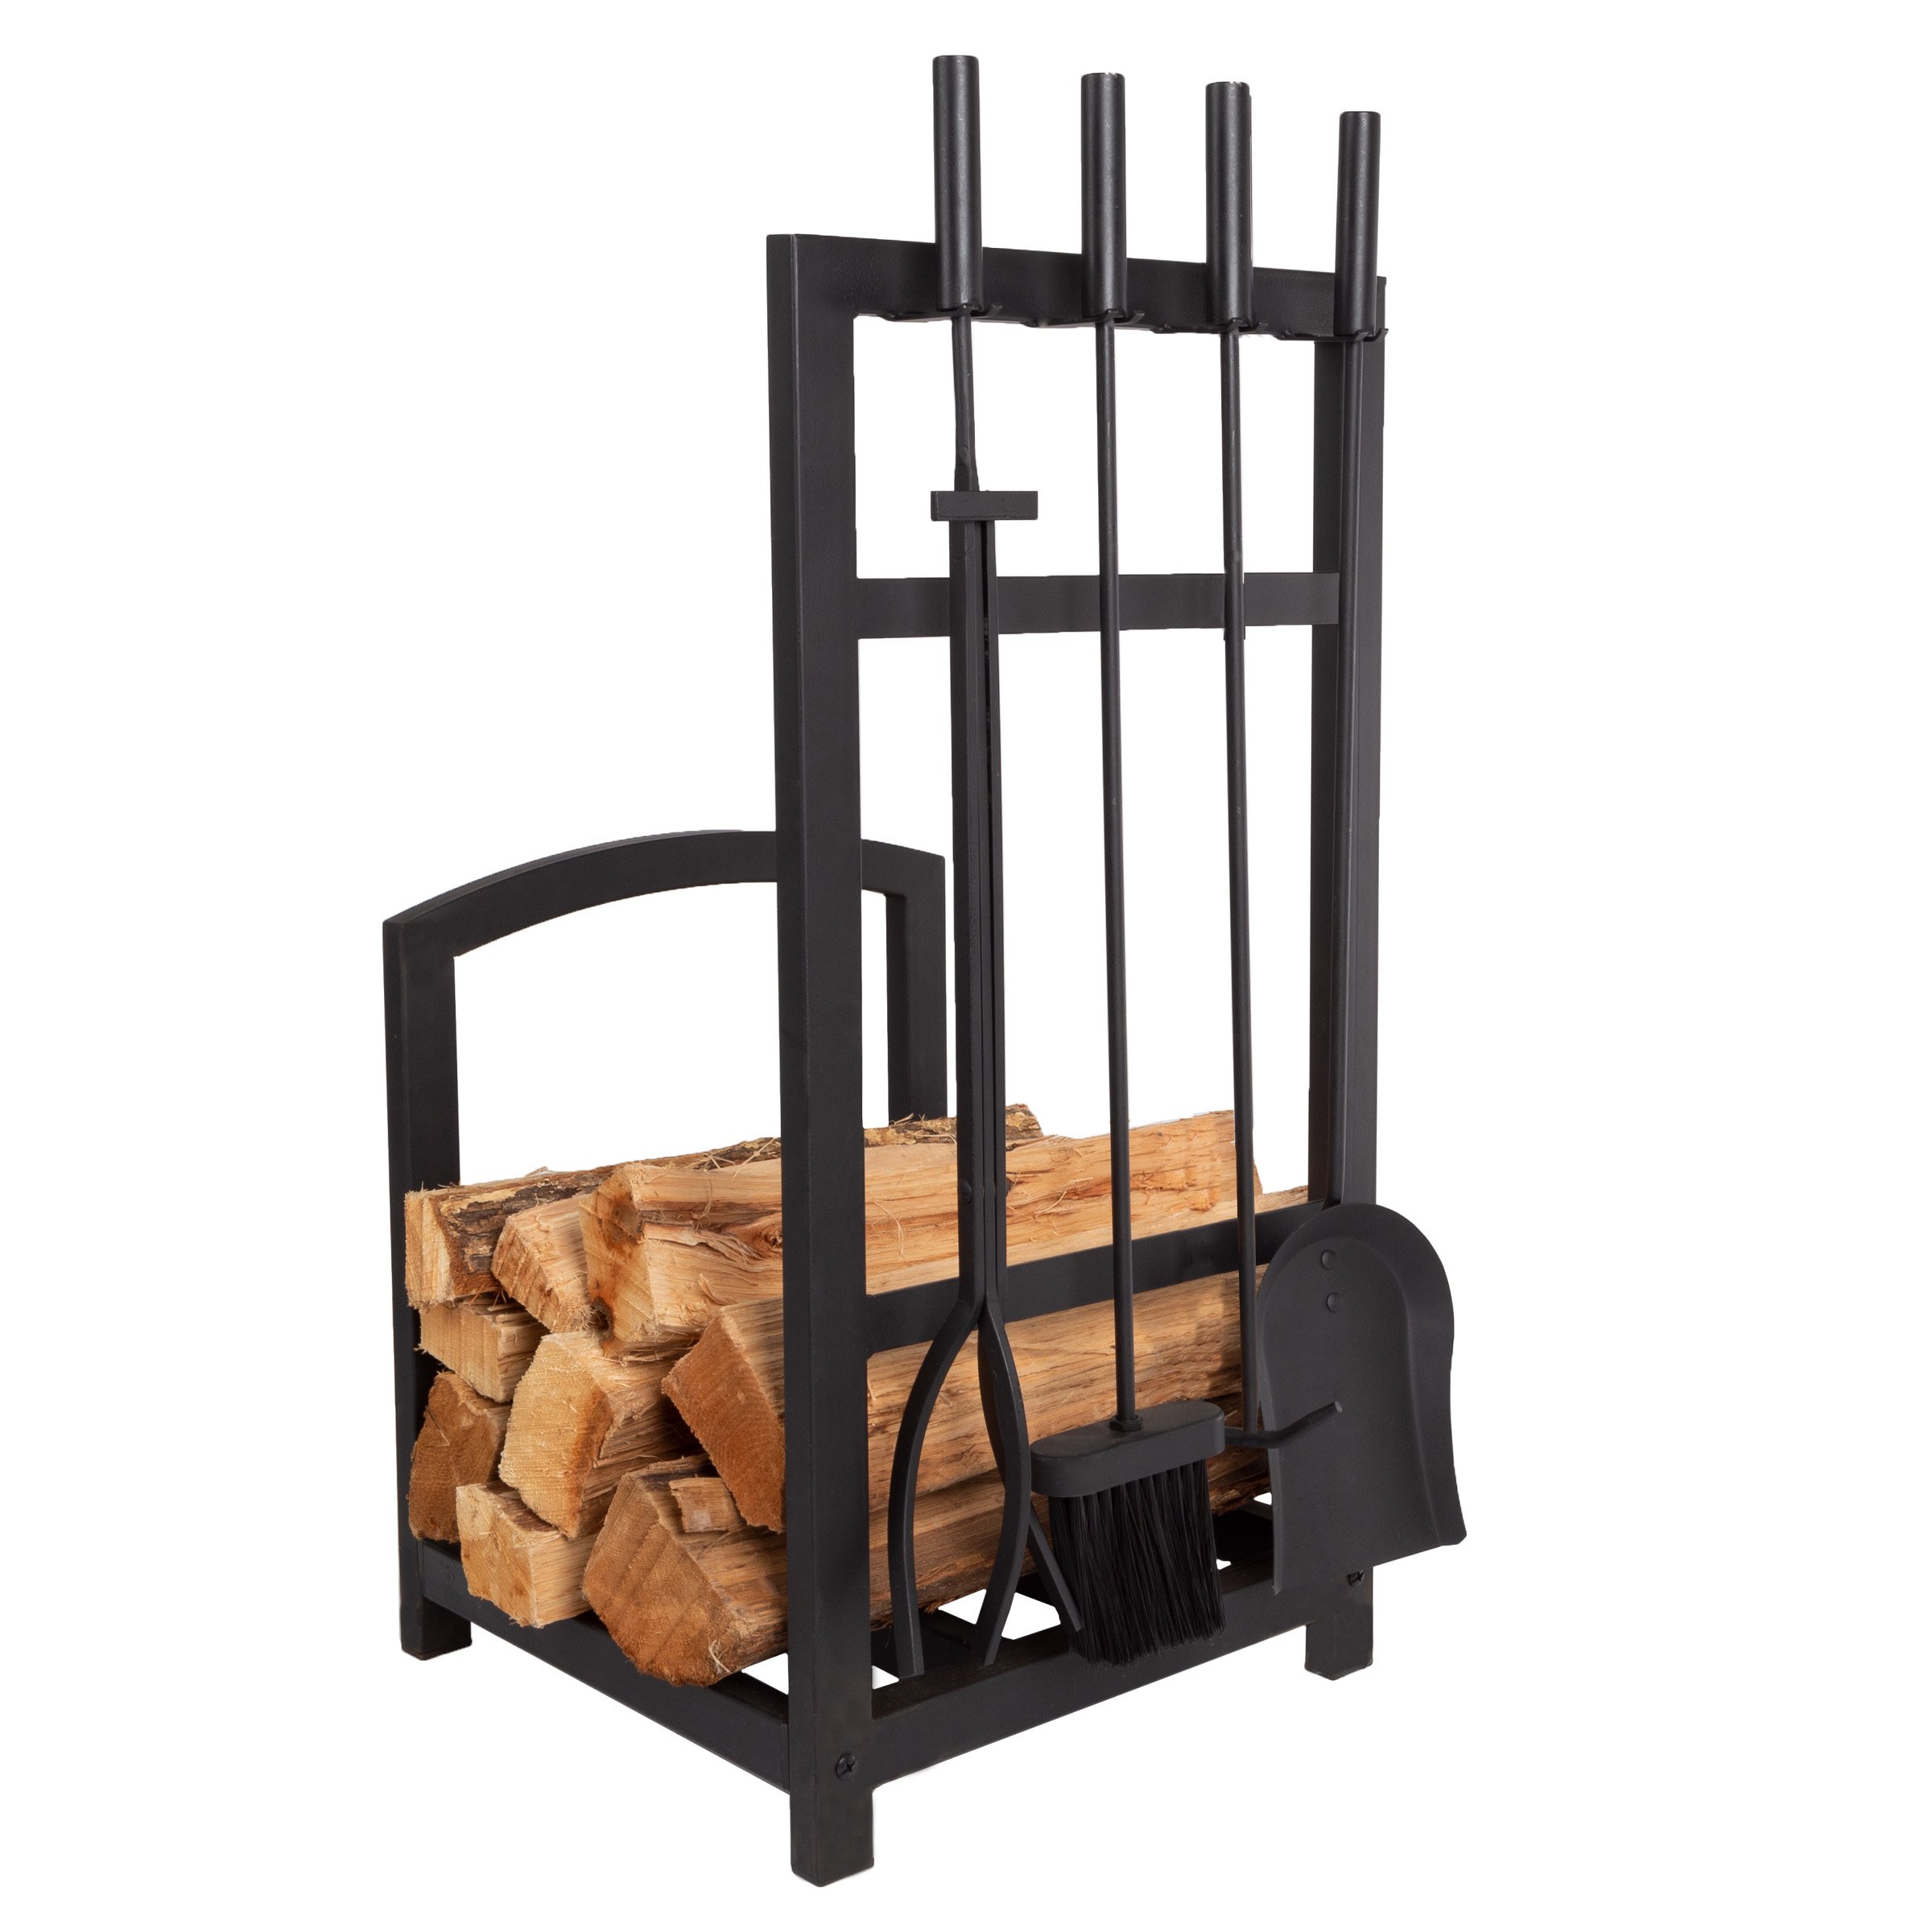 Fireplace Tool Set & Log Rack - Matte Black Mission Style Firewood Holder